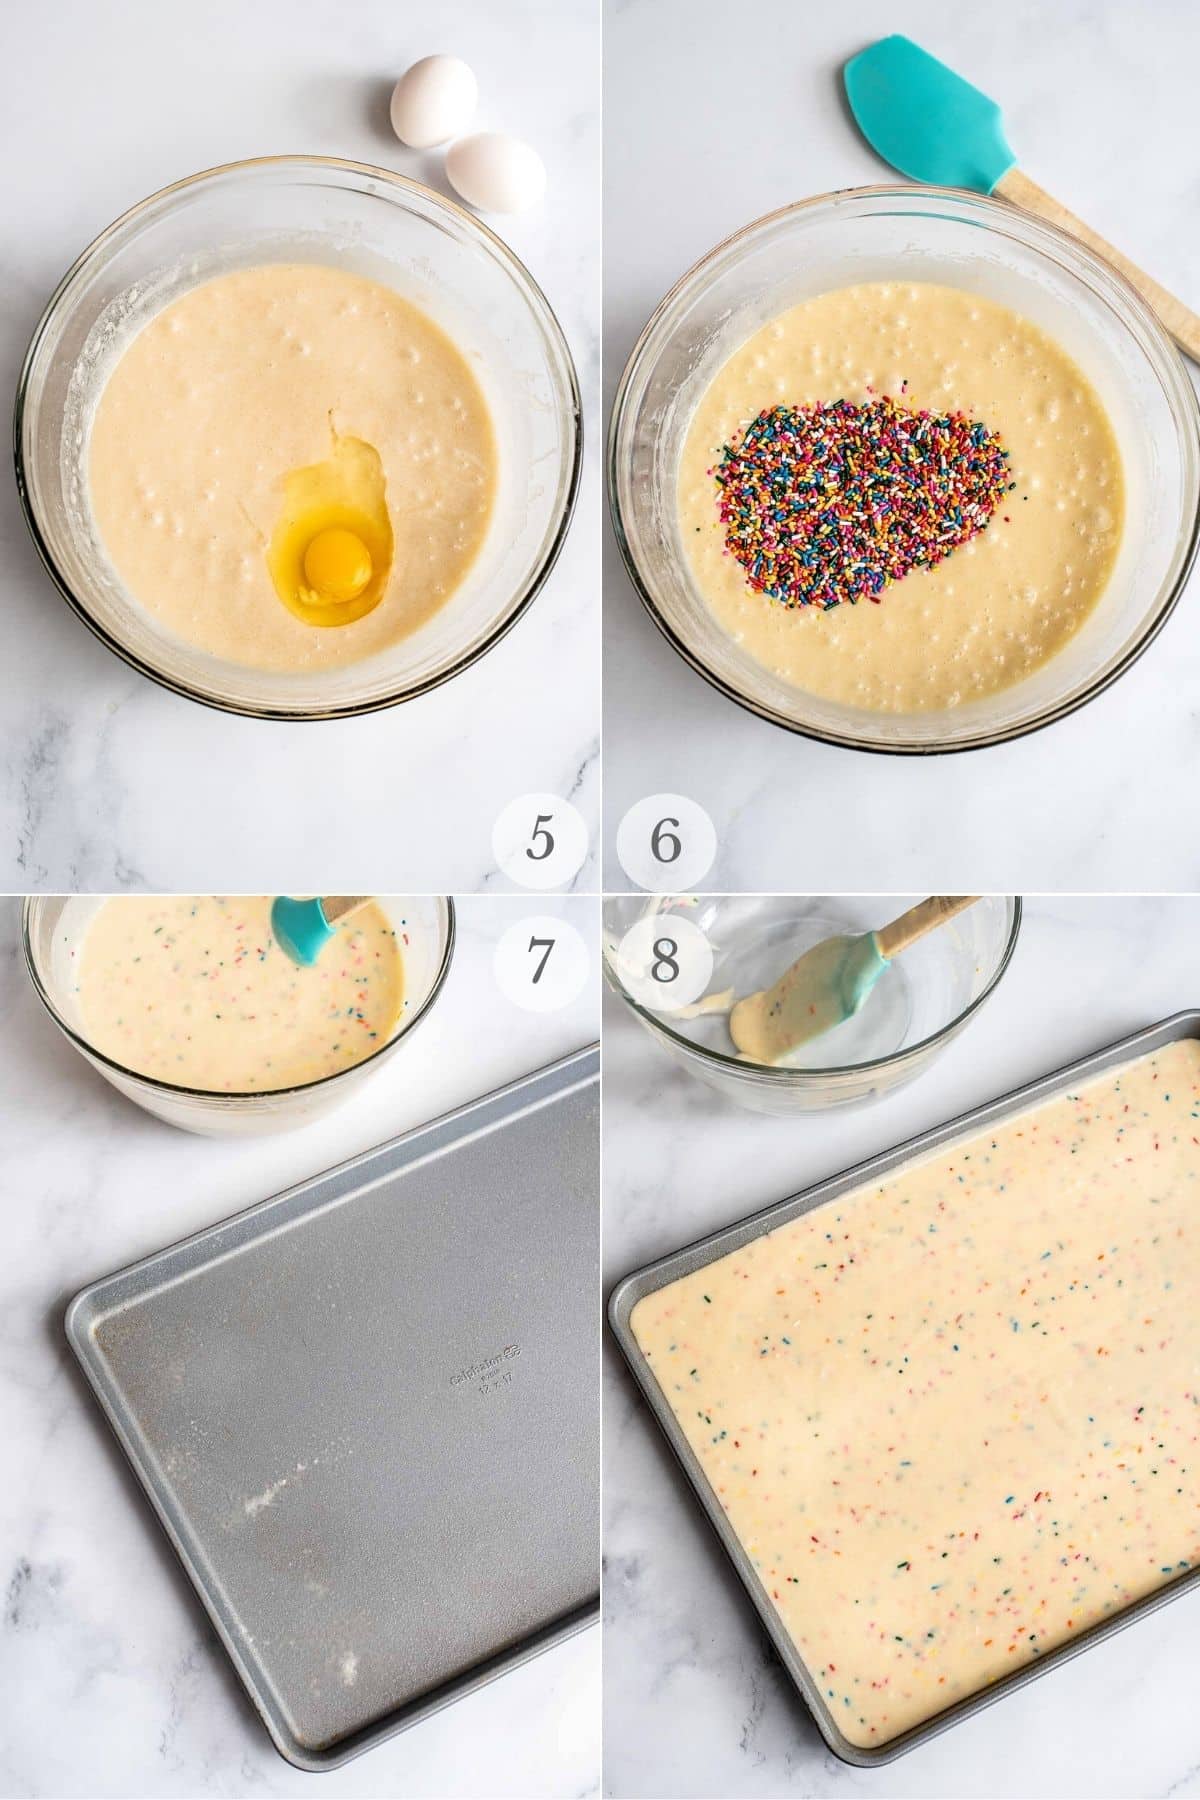 funfetti cake recipe steps 5-8